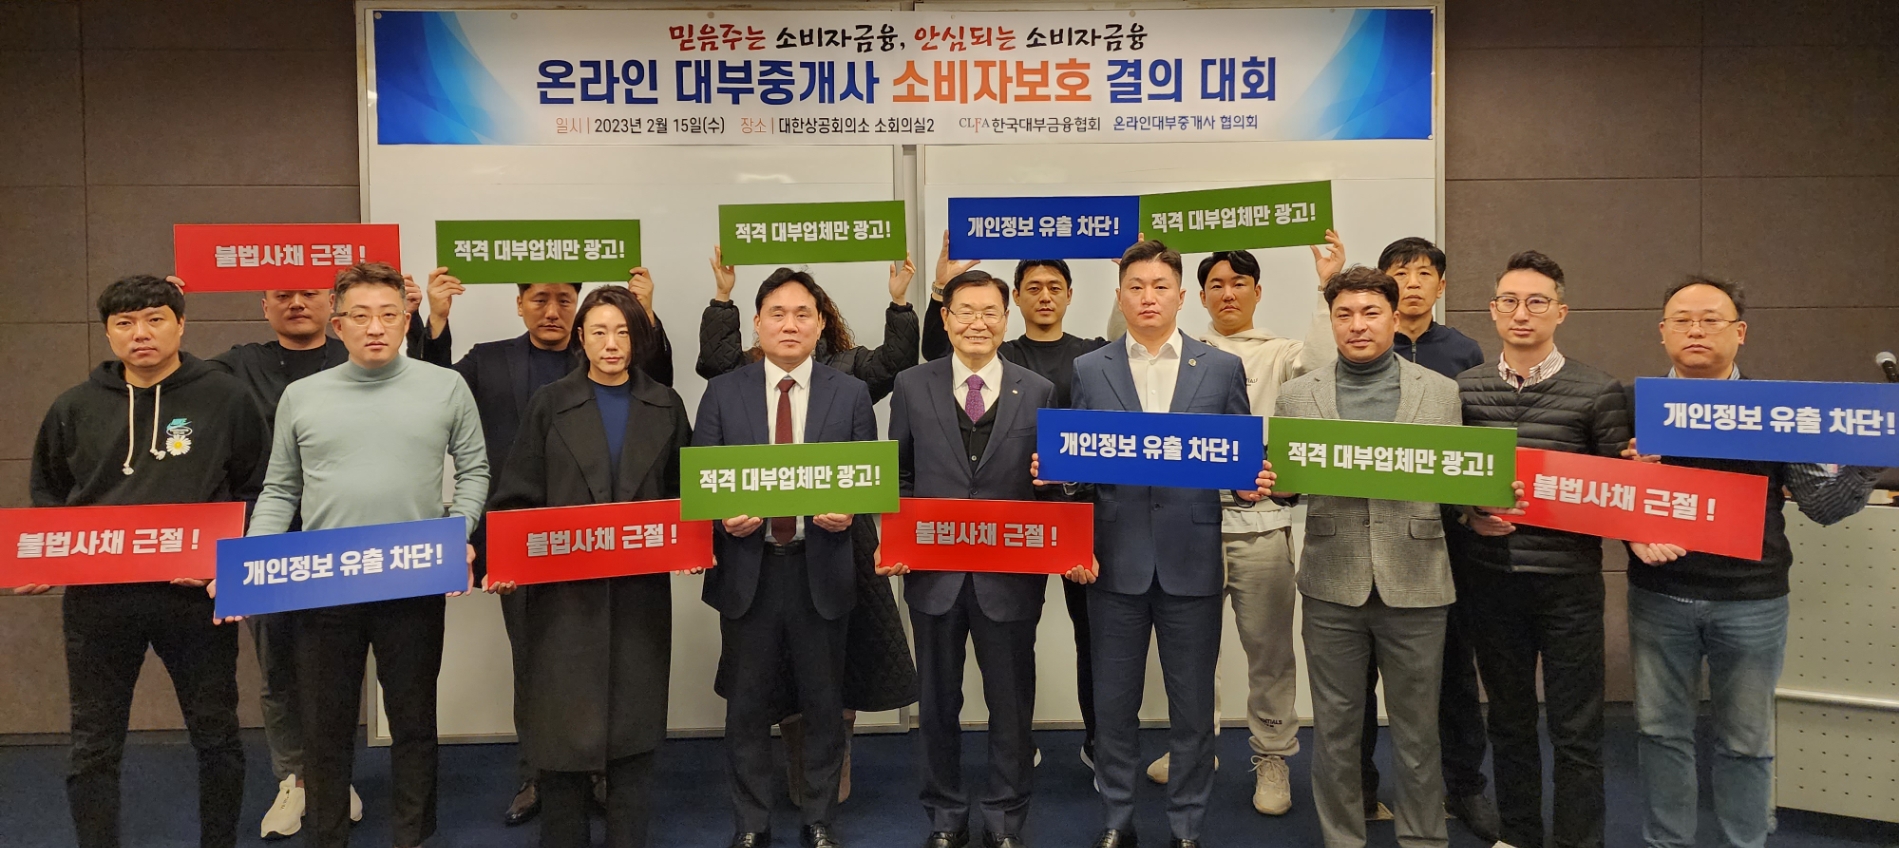 임승보 한국대부금융협회장(가운데)과 14개 온라인 대부중개사들이 지난달 대부이용자 보호 및 신뢰 유지를 위한 자정활동 서약서 체결식을 개최했다. /사진제공=한국대부금융협회